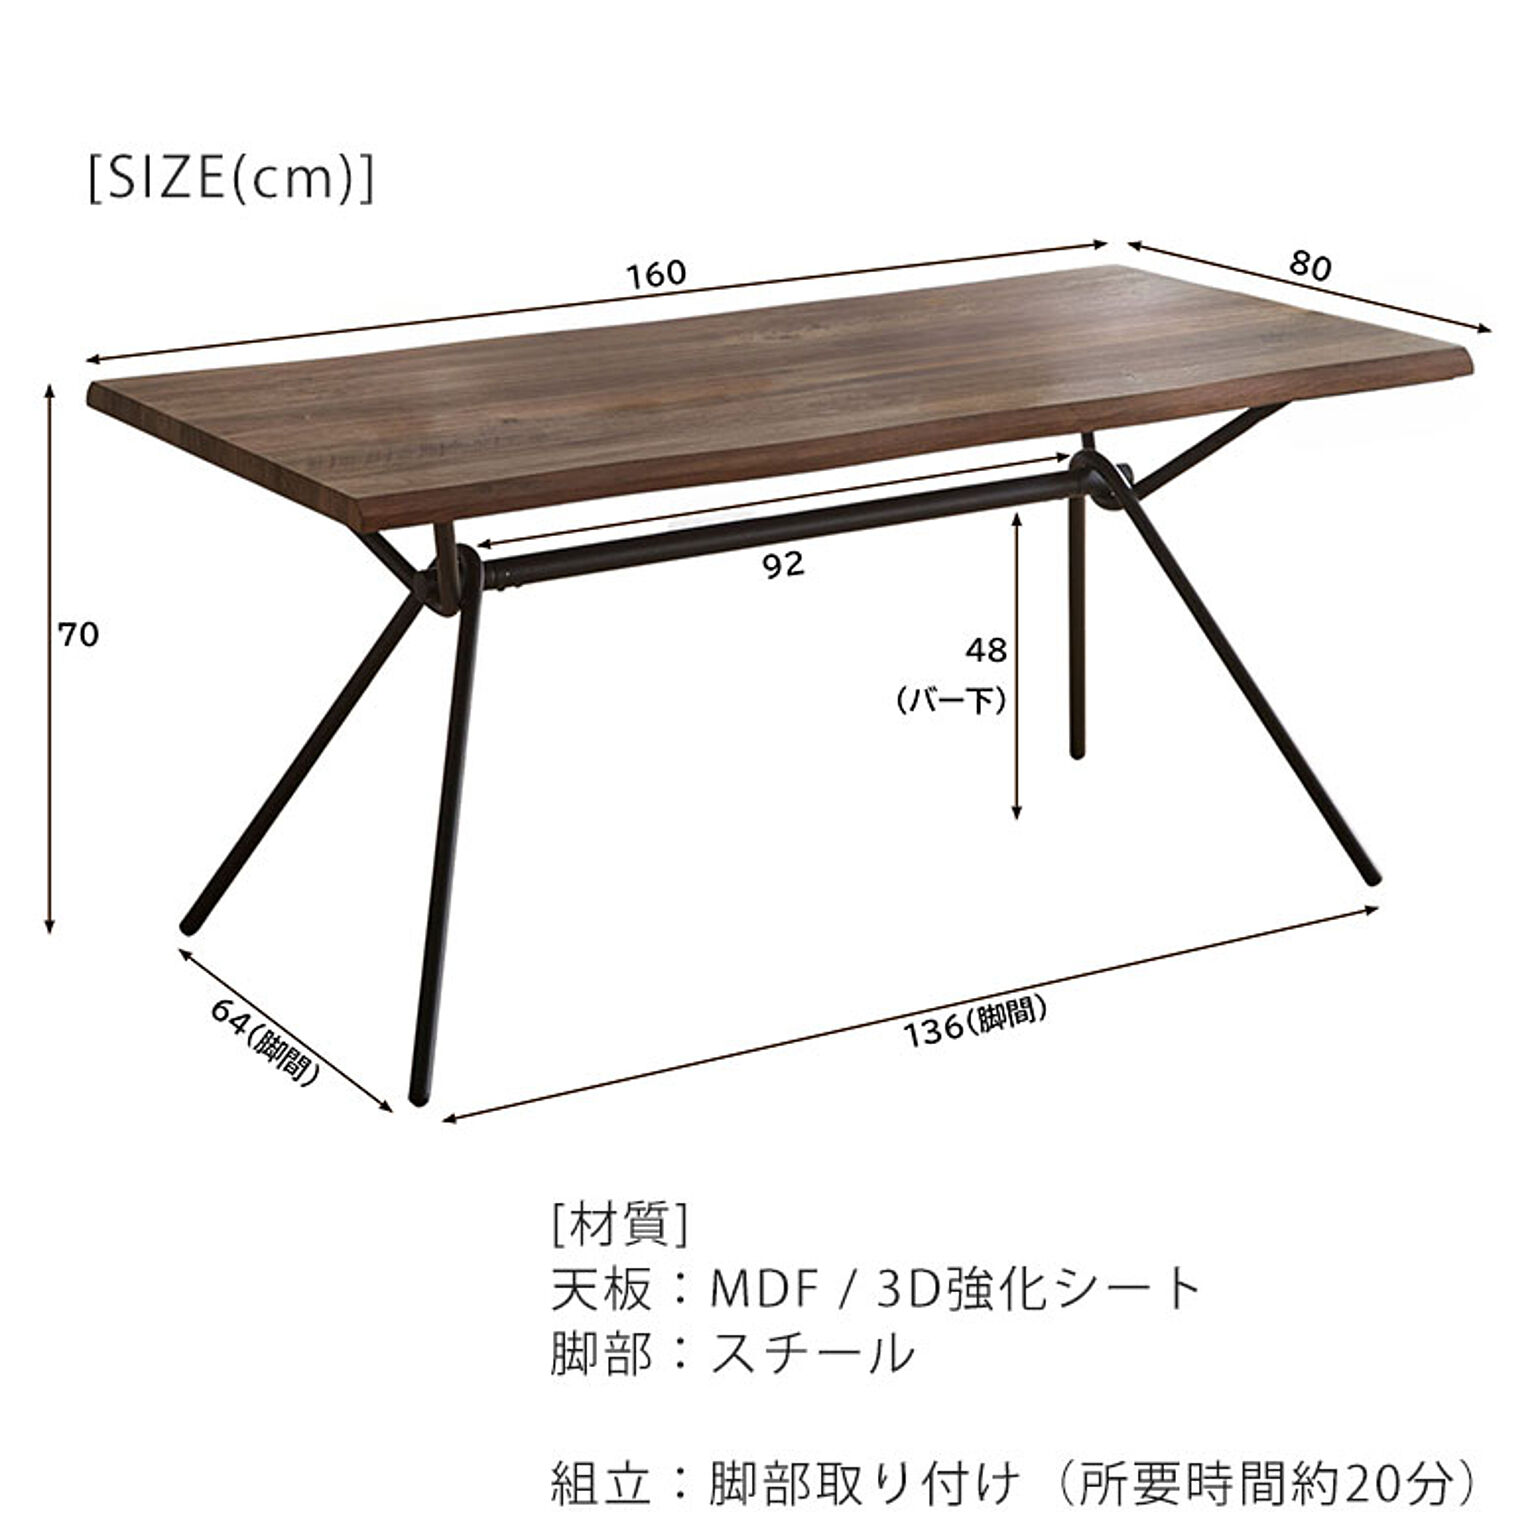 ダイニングテーブル 160 木製 4人掛け おしゃれ 食卓テーブル なぐり加工 ヴィンテージ 高級 インダストリアル 古材風 モダン 食卓 木目 単品 DT6333A